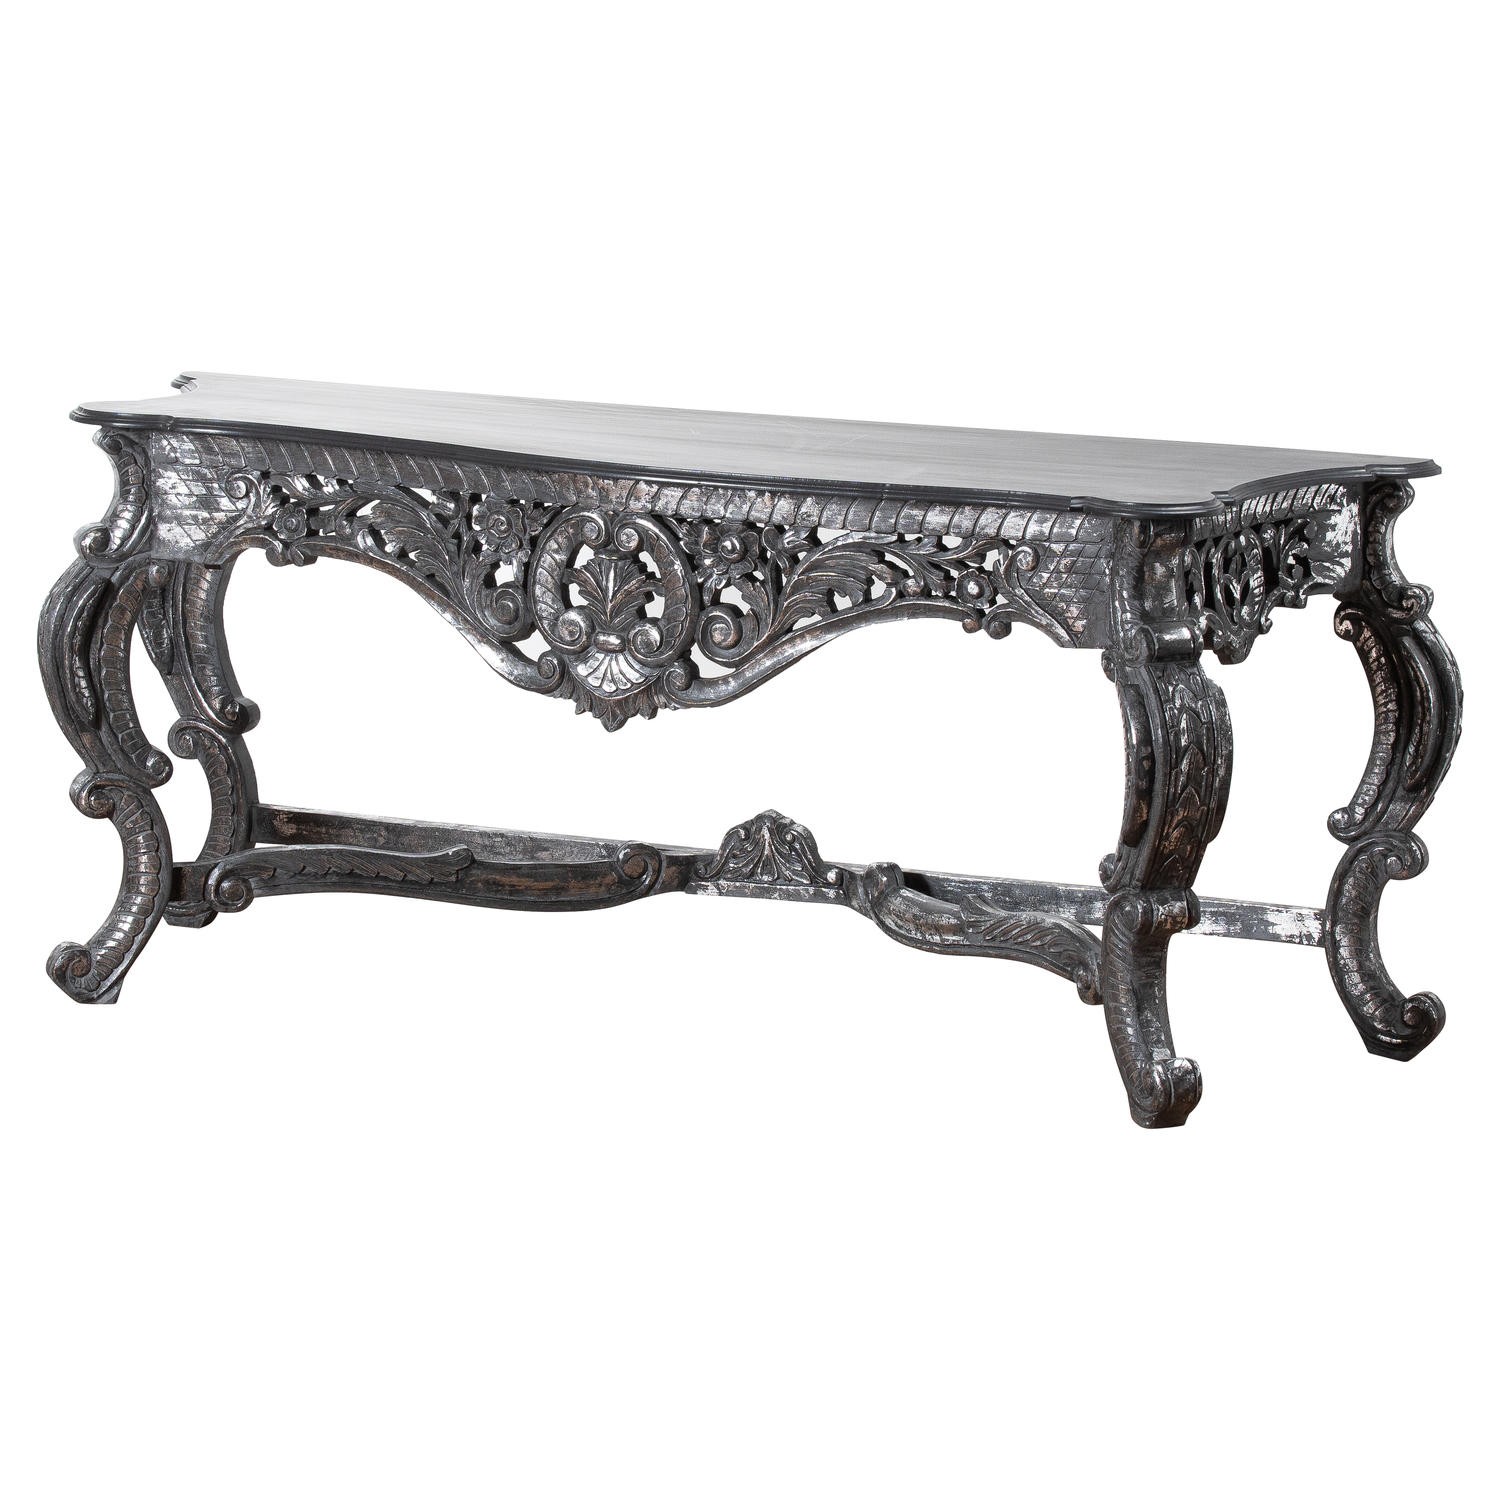 Estila Barokní vyřezávaný konzolový stolek Louise ve stříbrném provedení 191cm